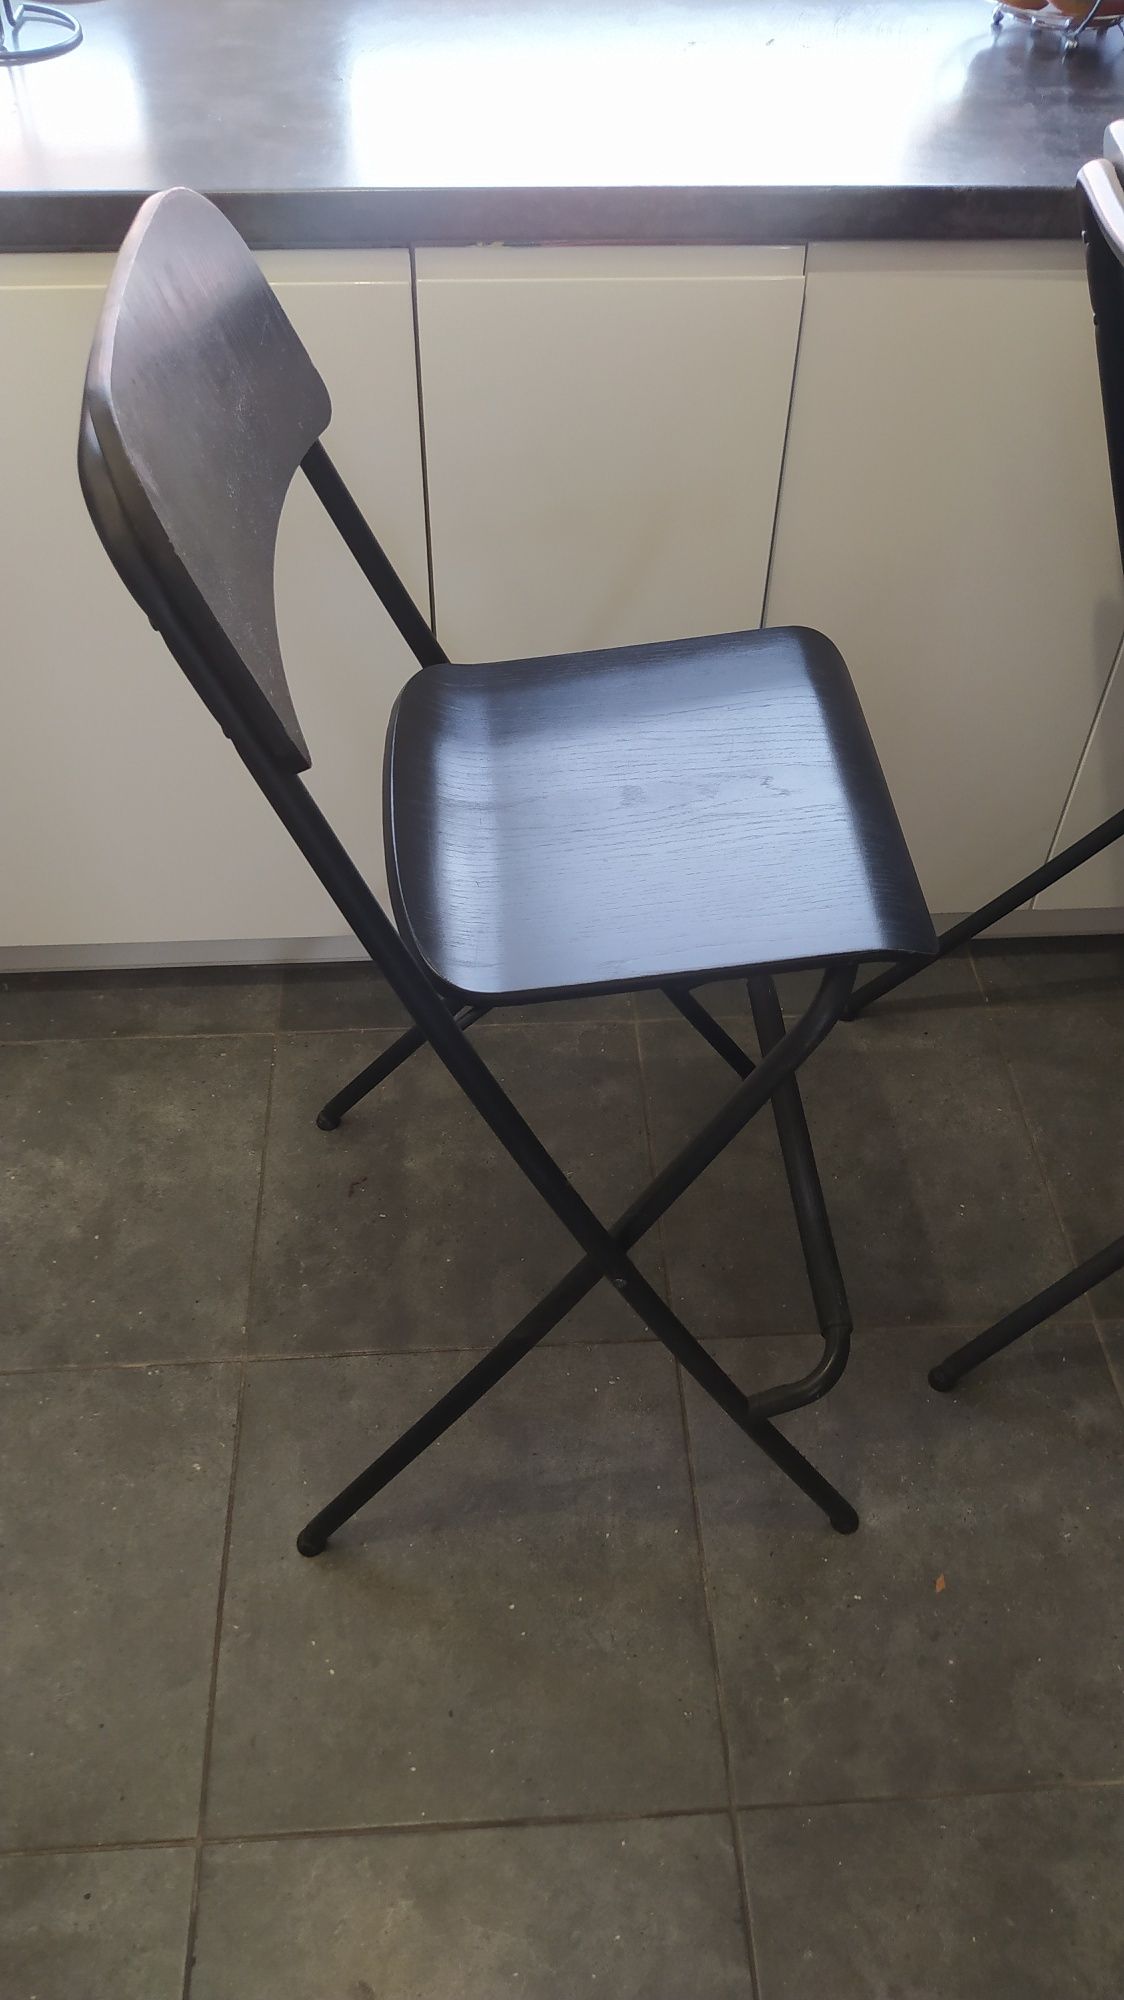 Krzesła wysokie kuchnia/bar